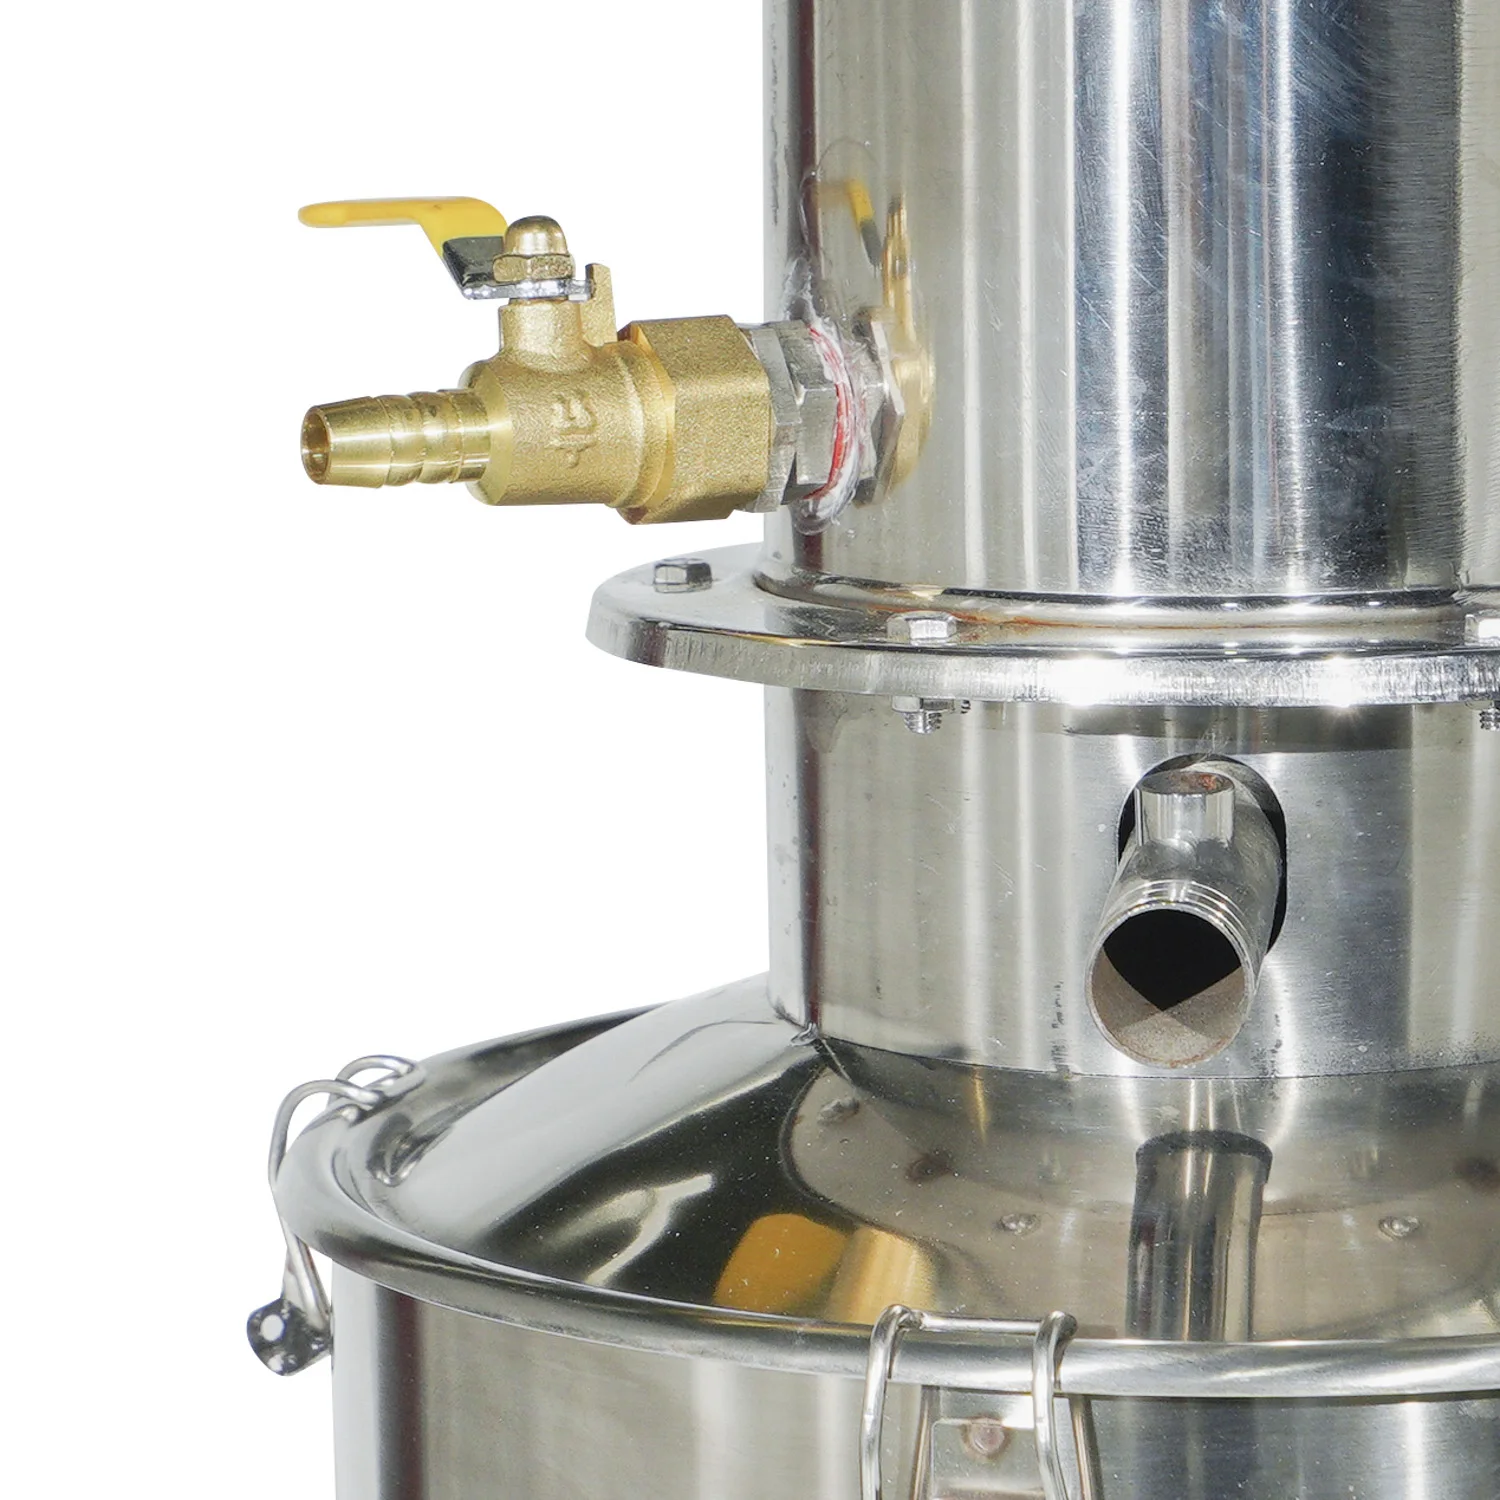 dz-5liii stainless steel water distiller device